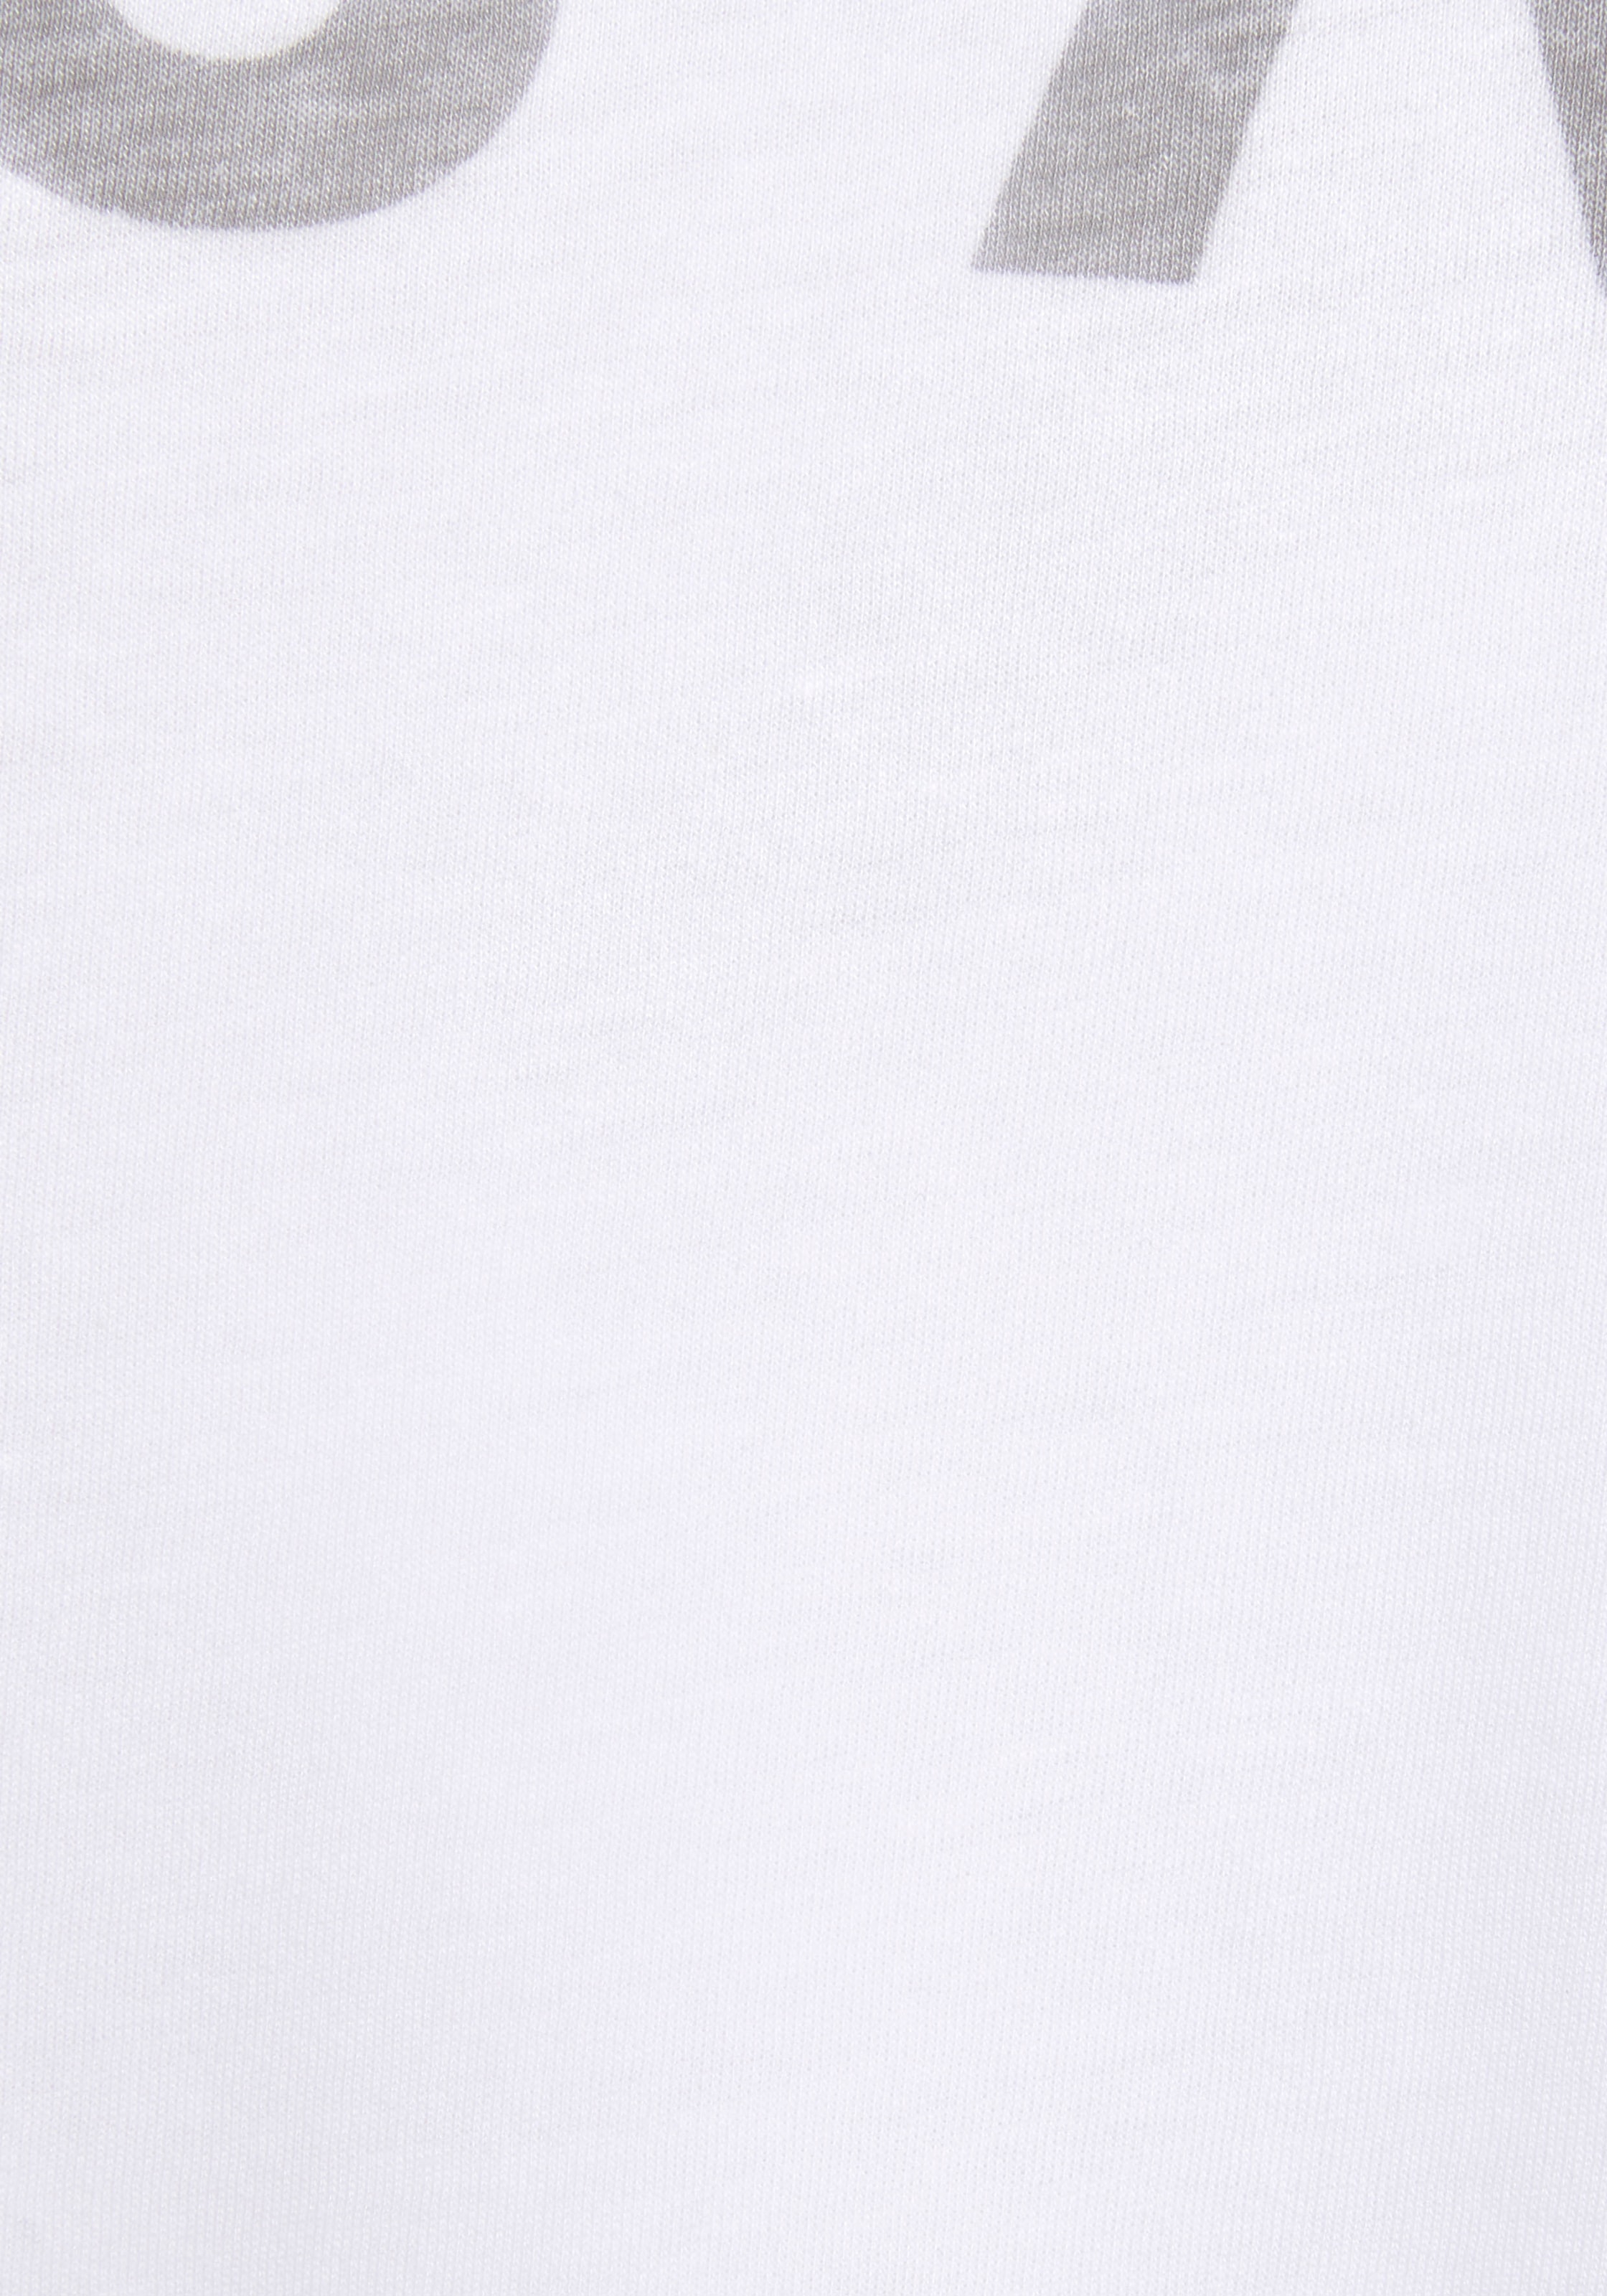 ♕ Elbsand 3/4-Arm-Shirt »Iduna«, mit Logoprint versandkostenfrei bestellen